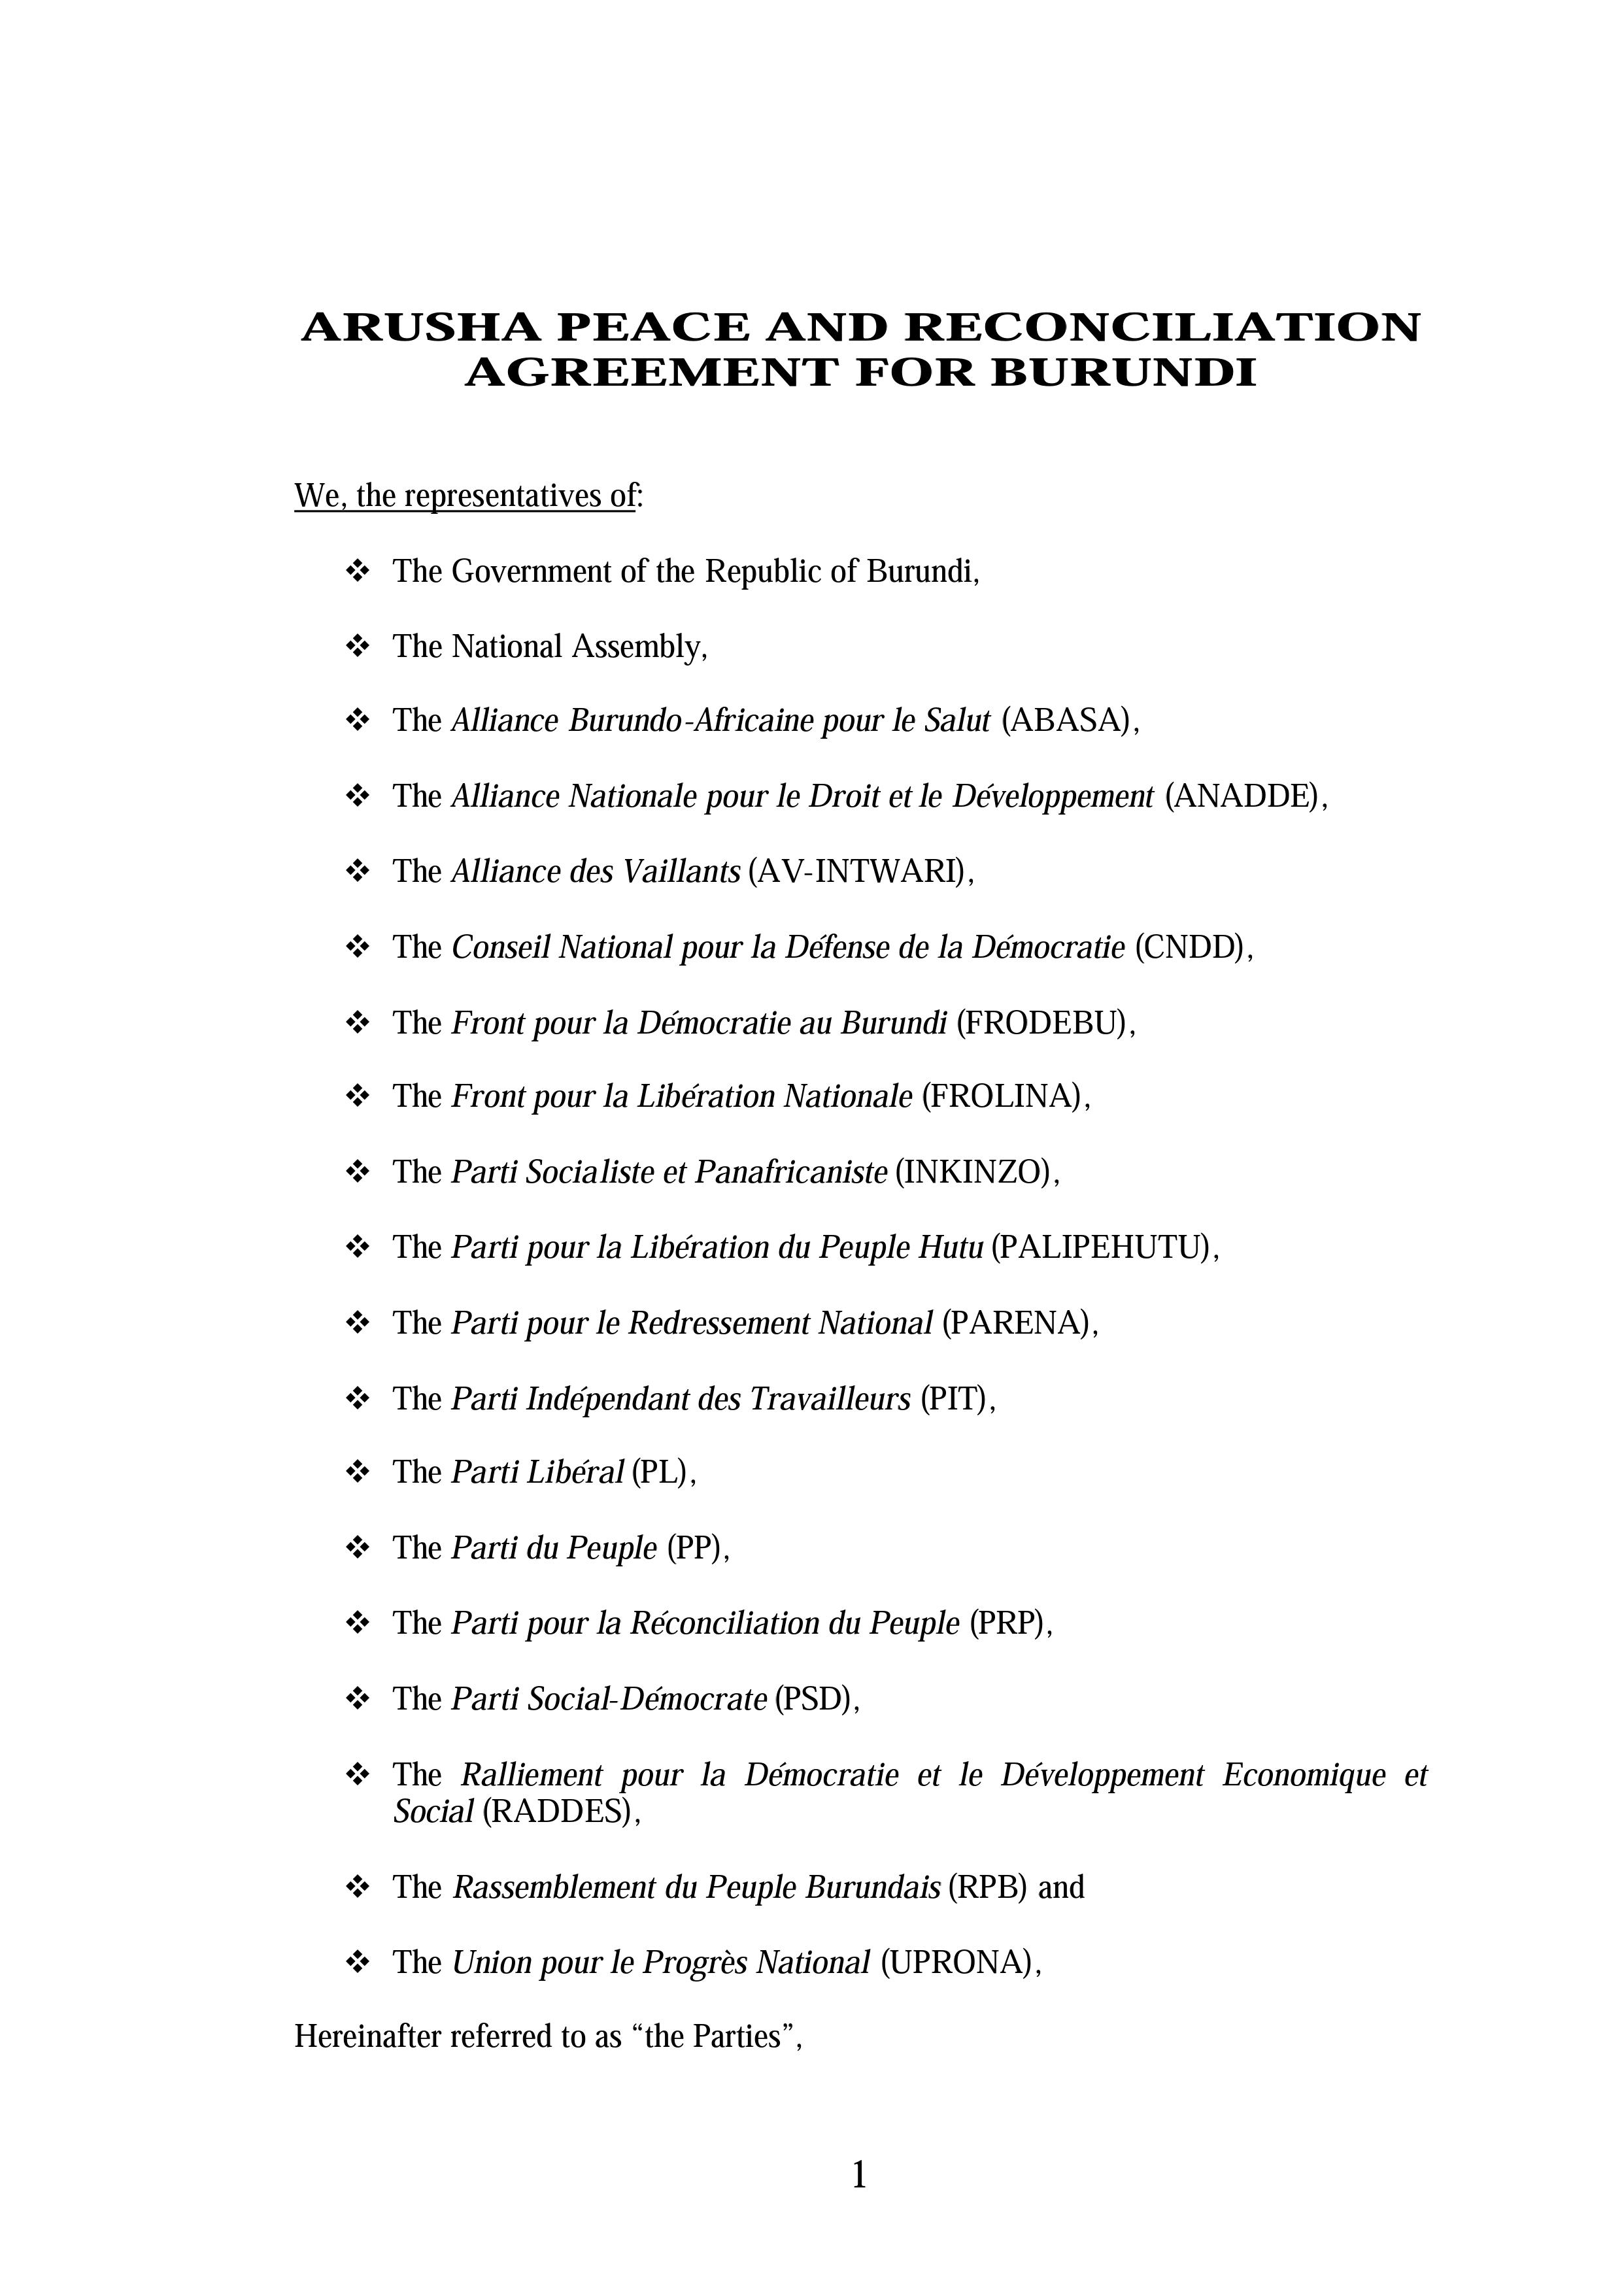 Interim Constitution - Burundi (2001-2004)